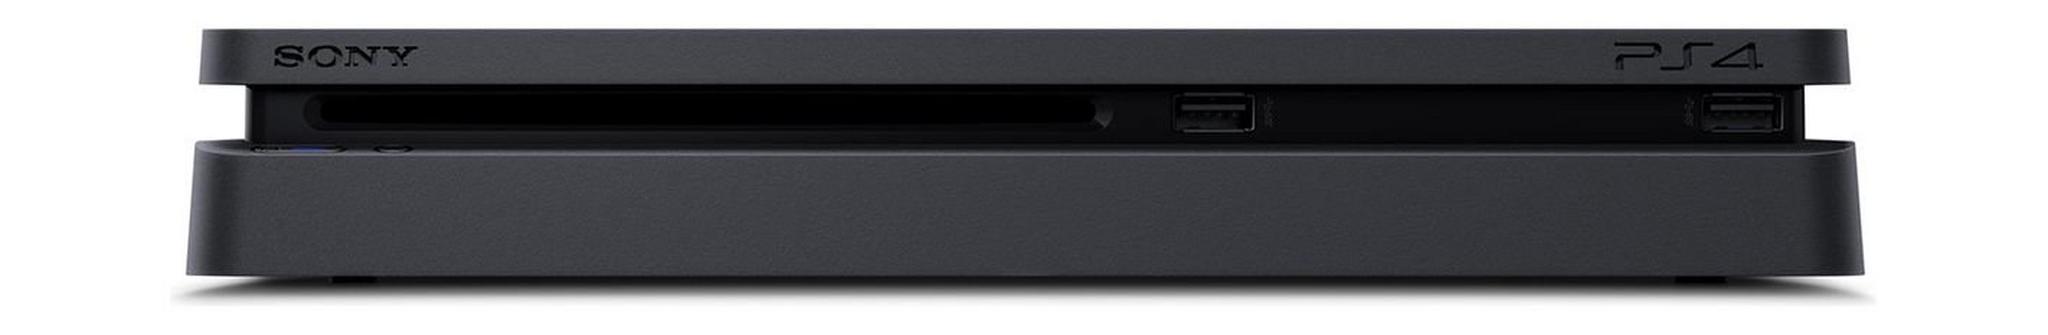 Sony Playstation 4 Slim 500GB Console - PAL